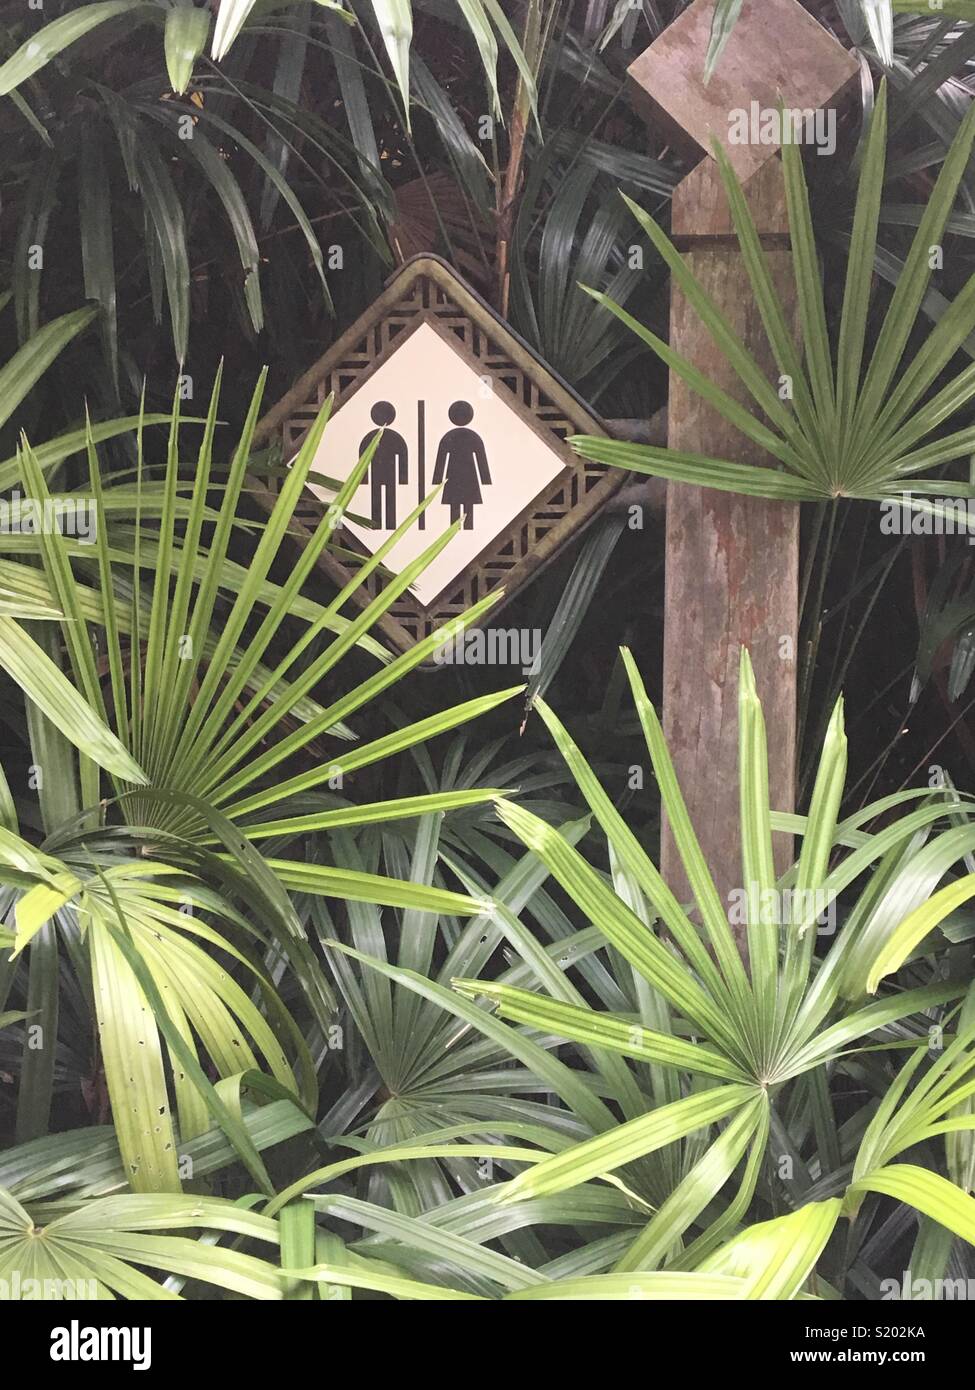 Wc digital signage circondato da foglie tropicali. Foto Stock